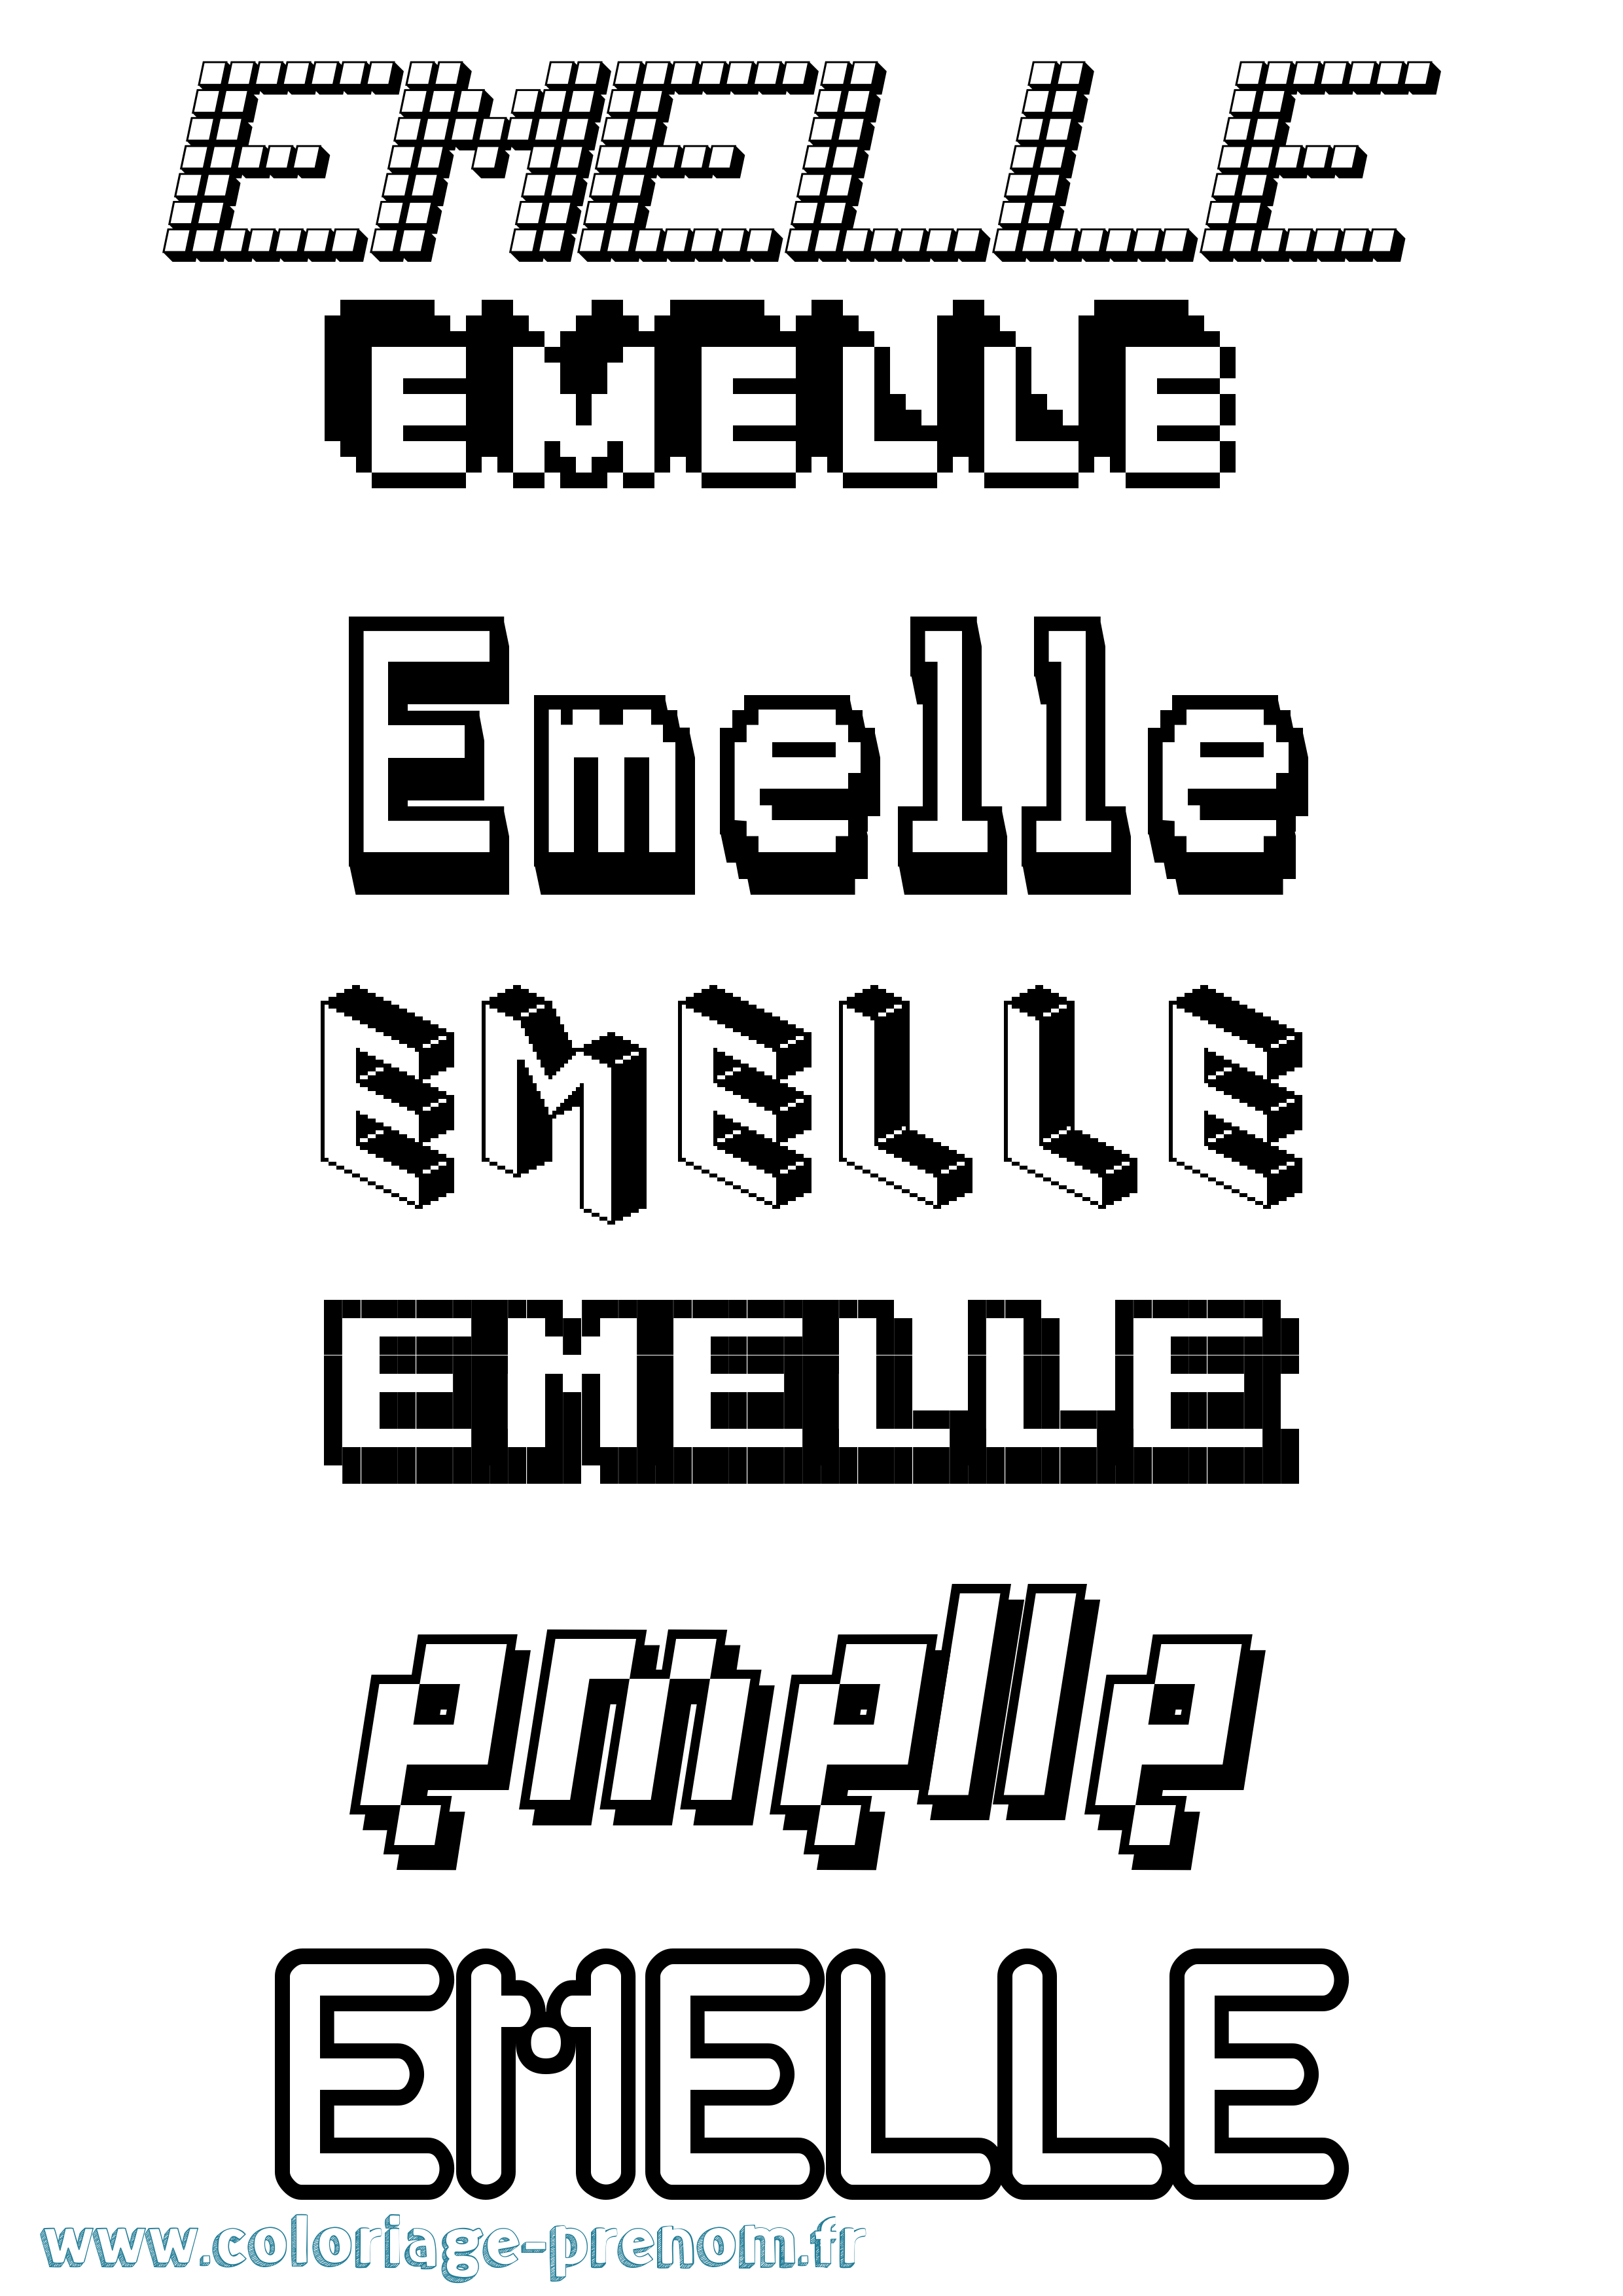 Coloriage prénom Emelle Pixel